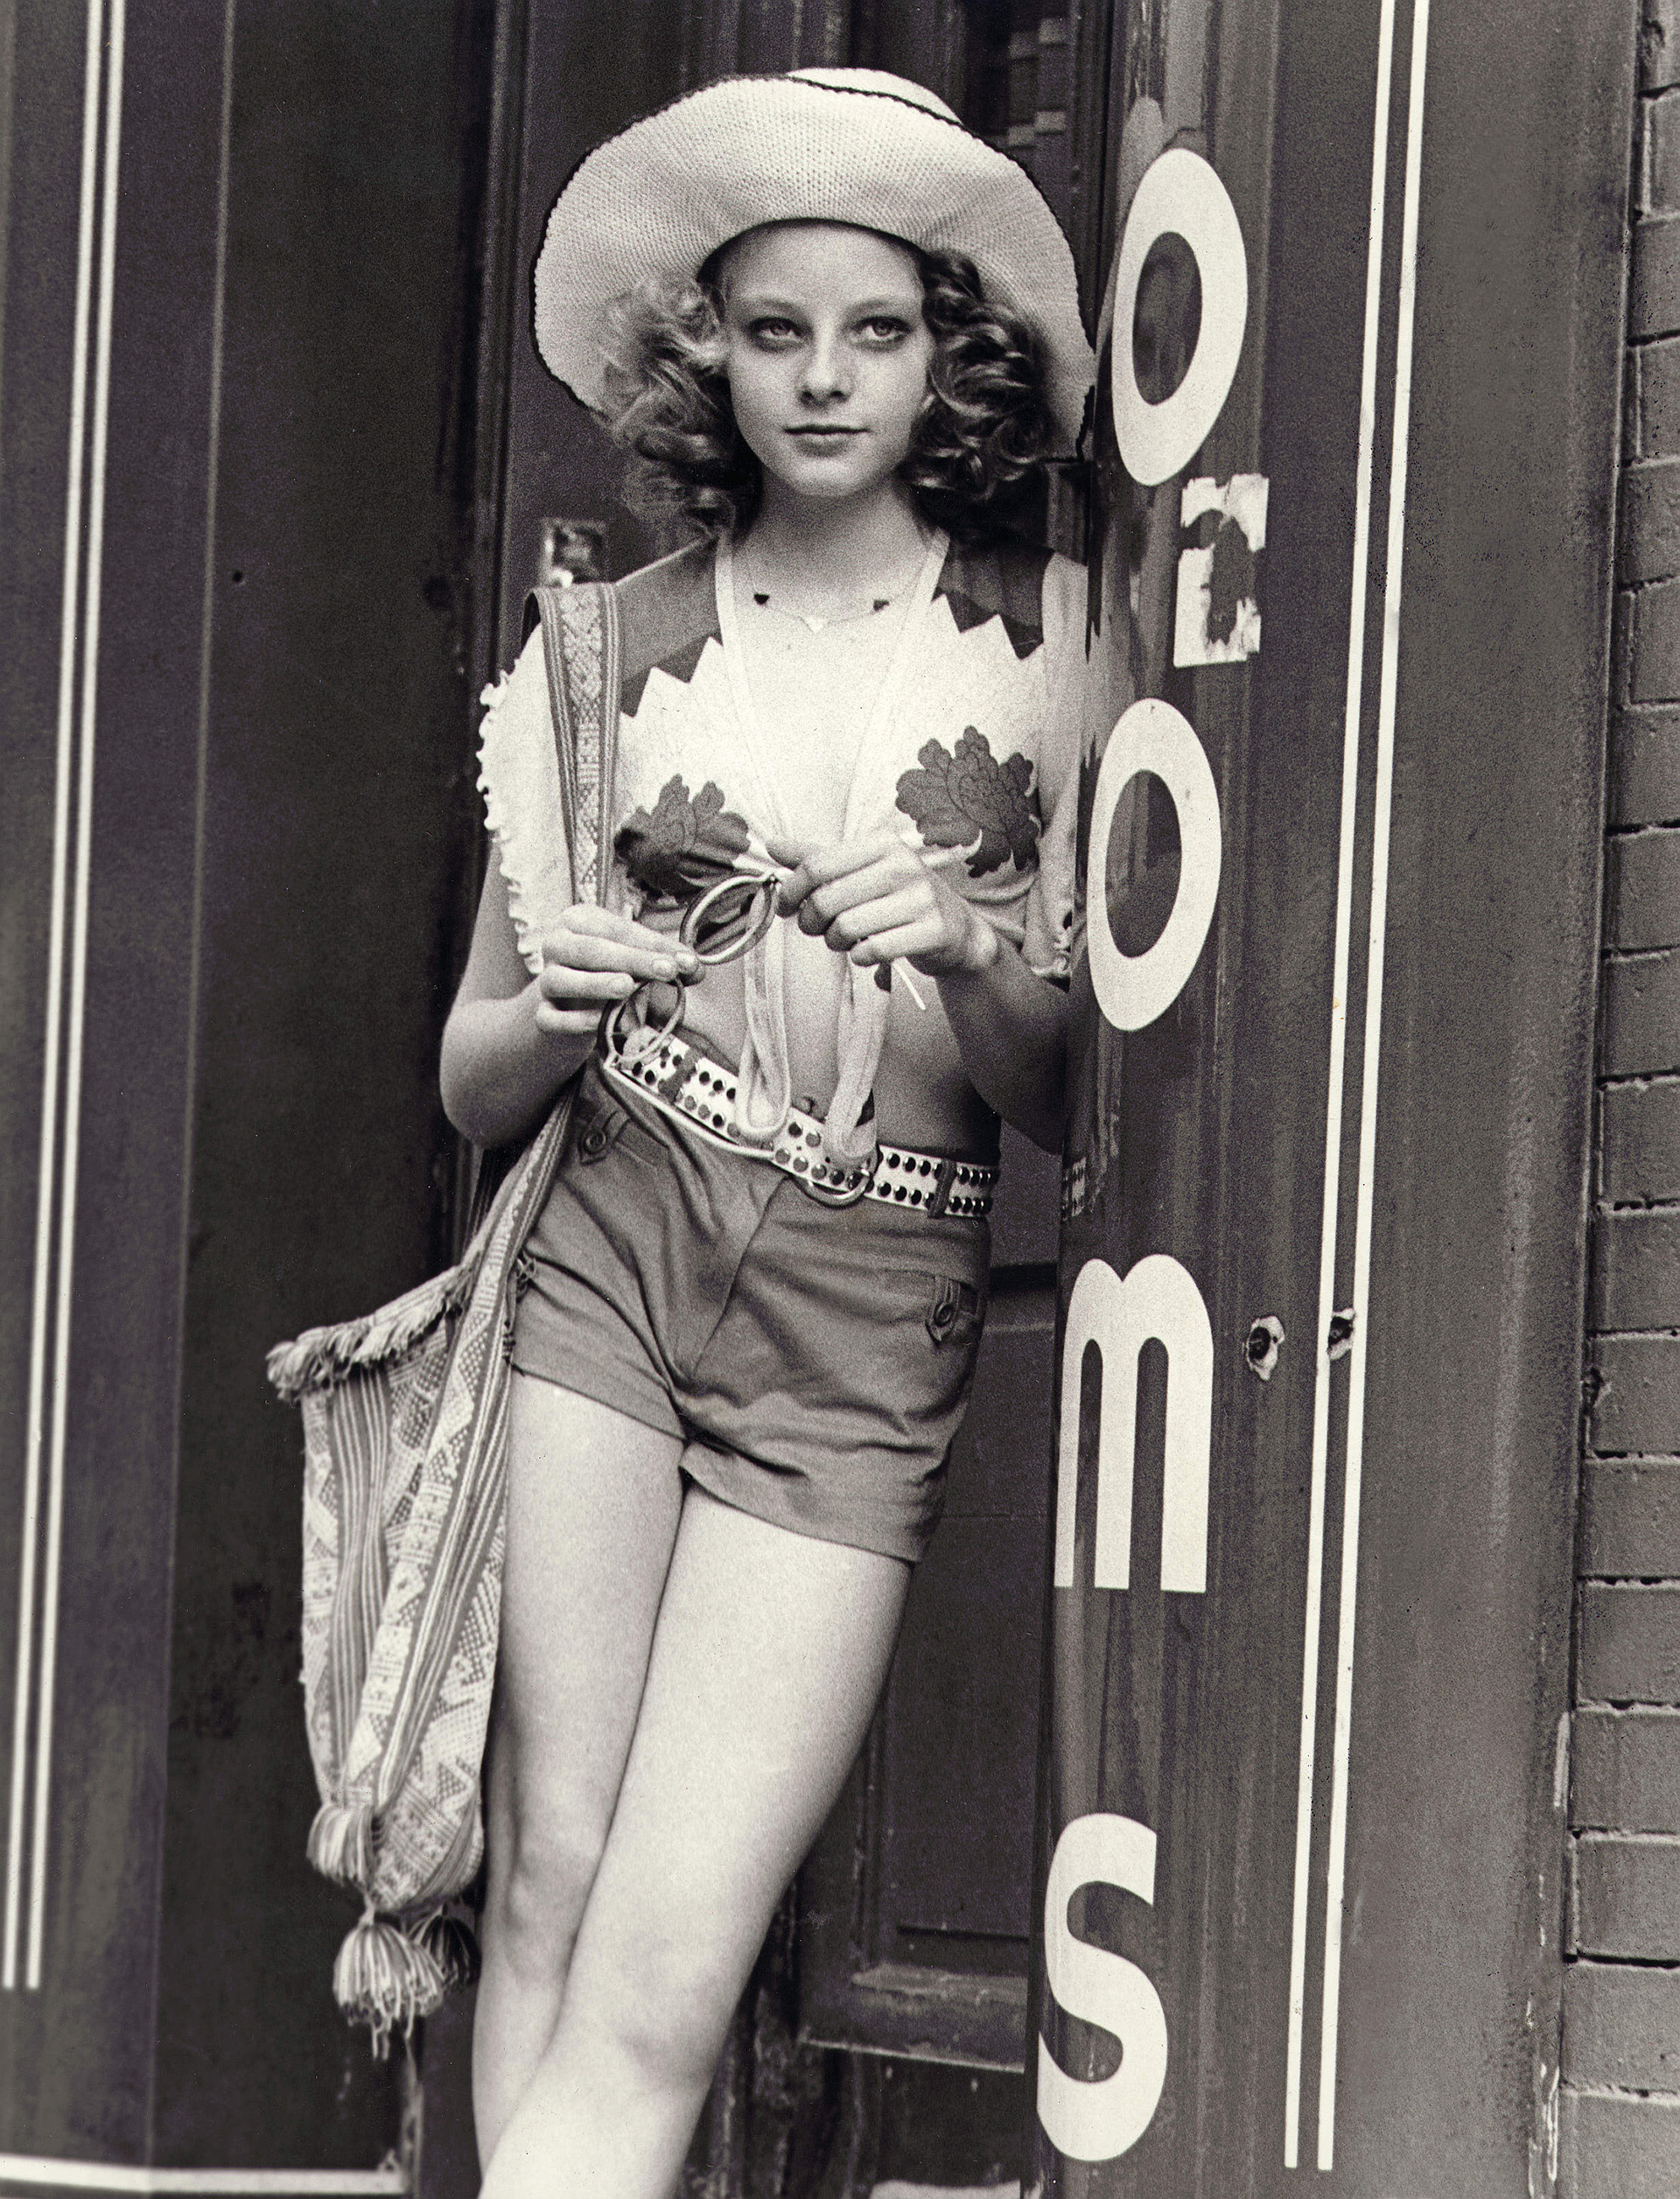 Jodie Foster interpretó a una prostituta de 12 años en "Taxi Driver" en 1976 con dirección de Martín Scorsese